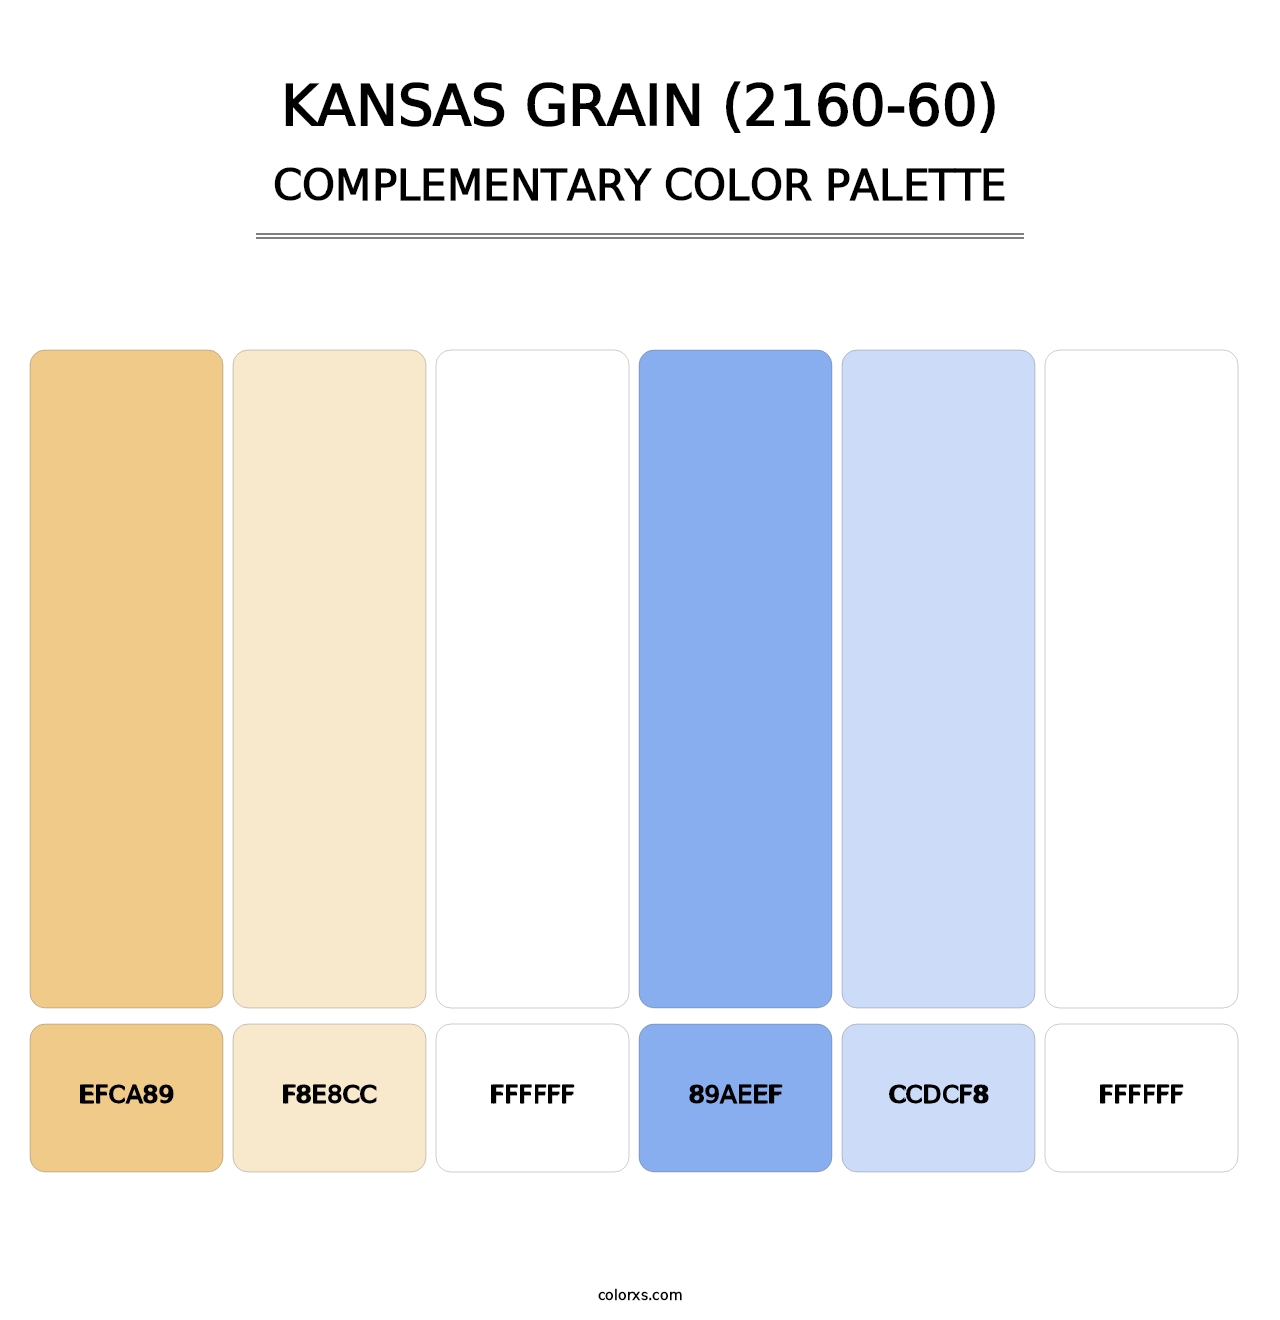 Kansas Grain (2160-60) - Complementary Color Palette